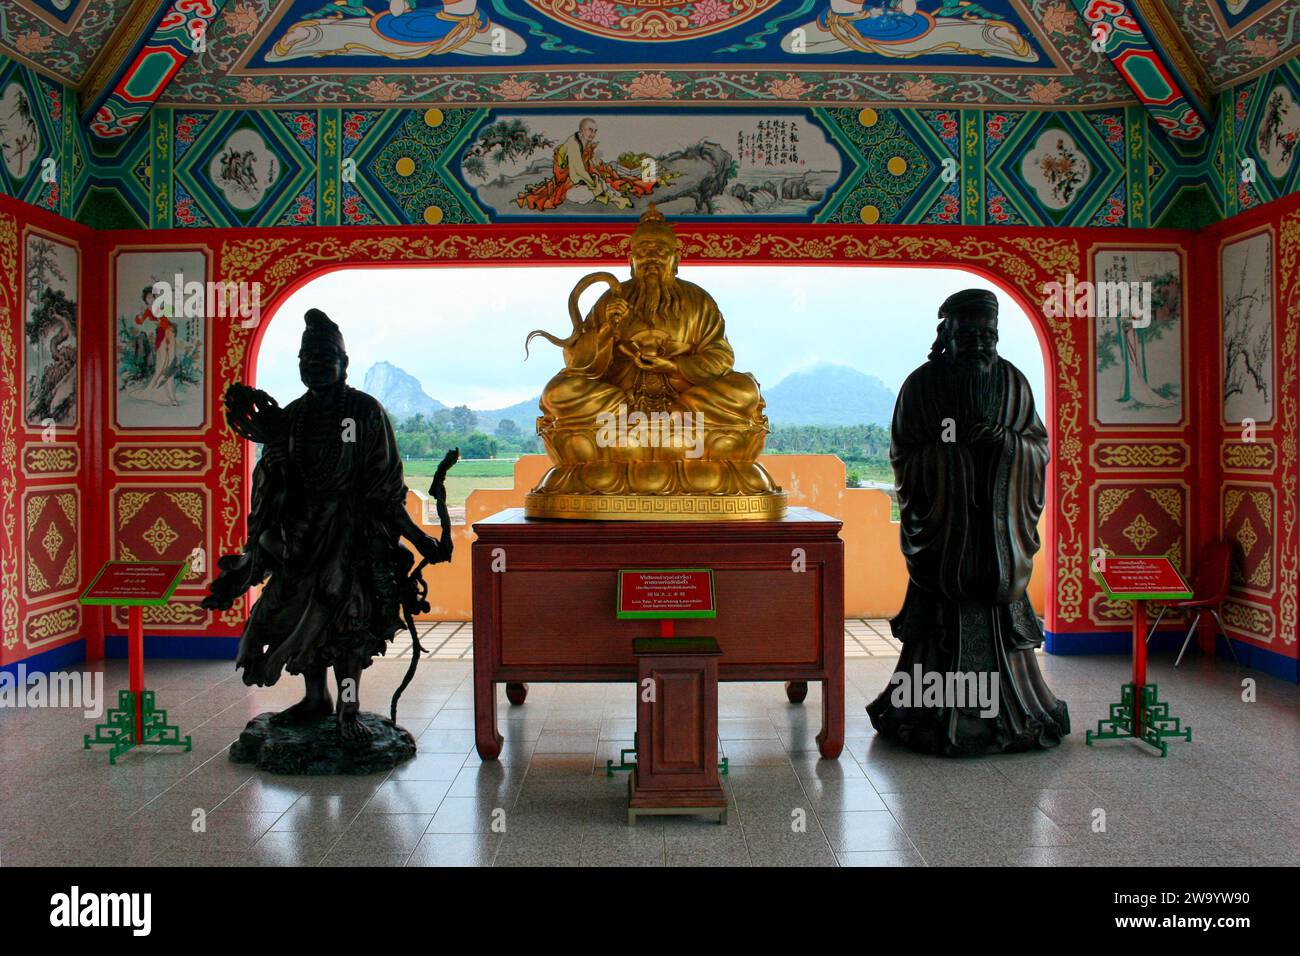 Statuen von, von links nach rechts: Chi Kung Huo Fu, alias Ji Gong (ein buddhistischer Mönch von Chan), Lao Tzu (ein chinesischer Philosoph, Schriftsteller und Gründer des Taoismus) und Stockfoto